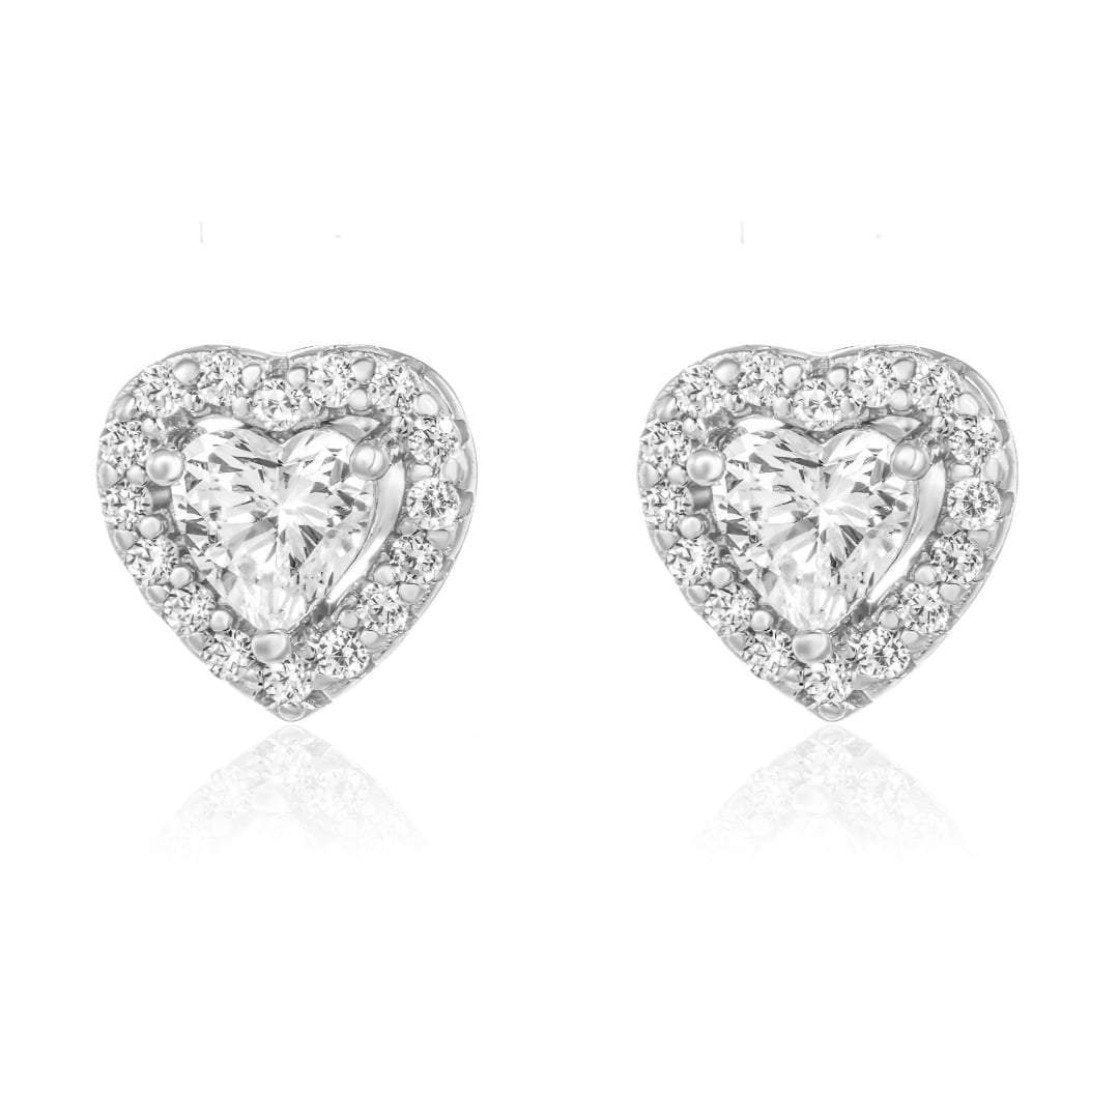 Halo Heart Stud Earrings/18K White Gold & Cubic Zirconia - infinityXinfinity.co.uk